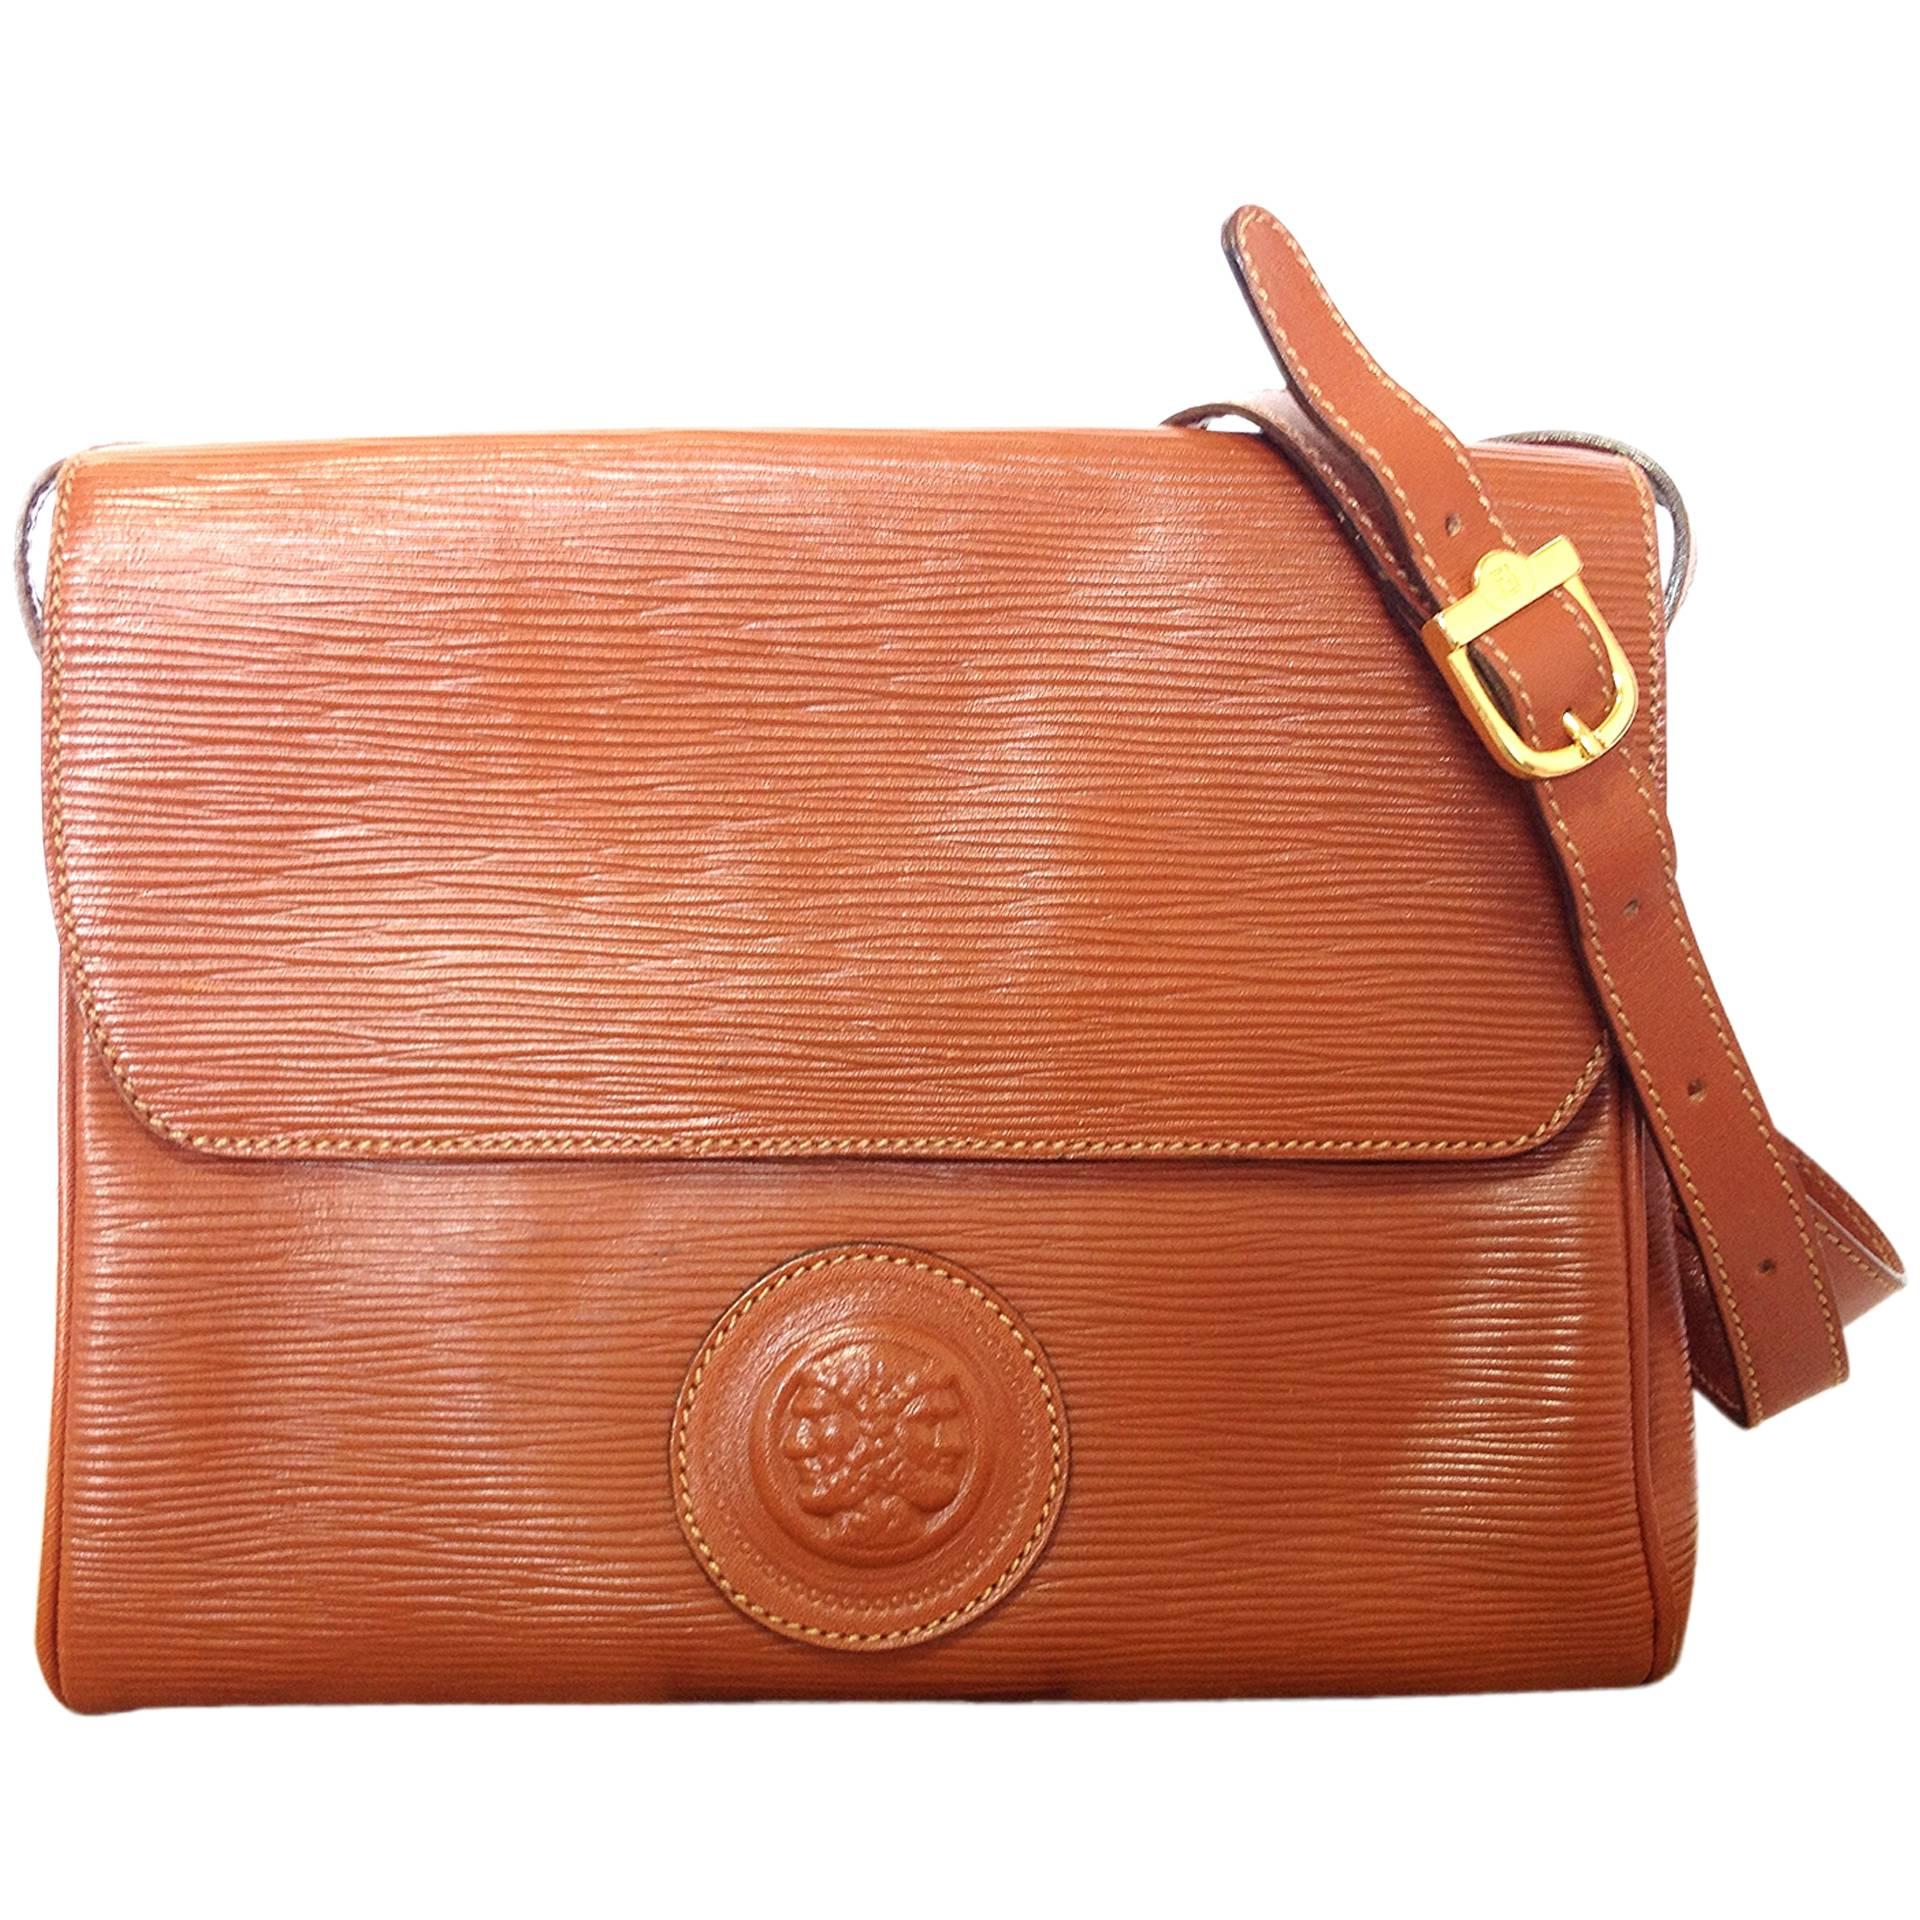 Vintage FENDI brown epi leather messenger bag, shoulder purse with iconic logo For Sale